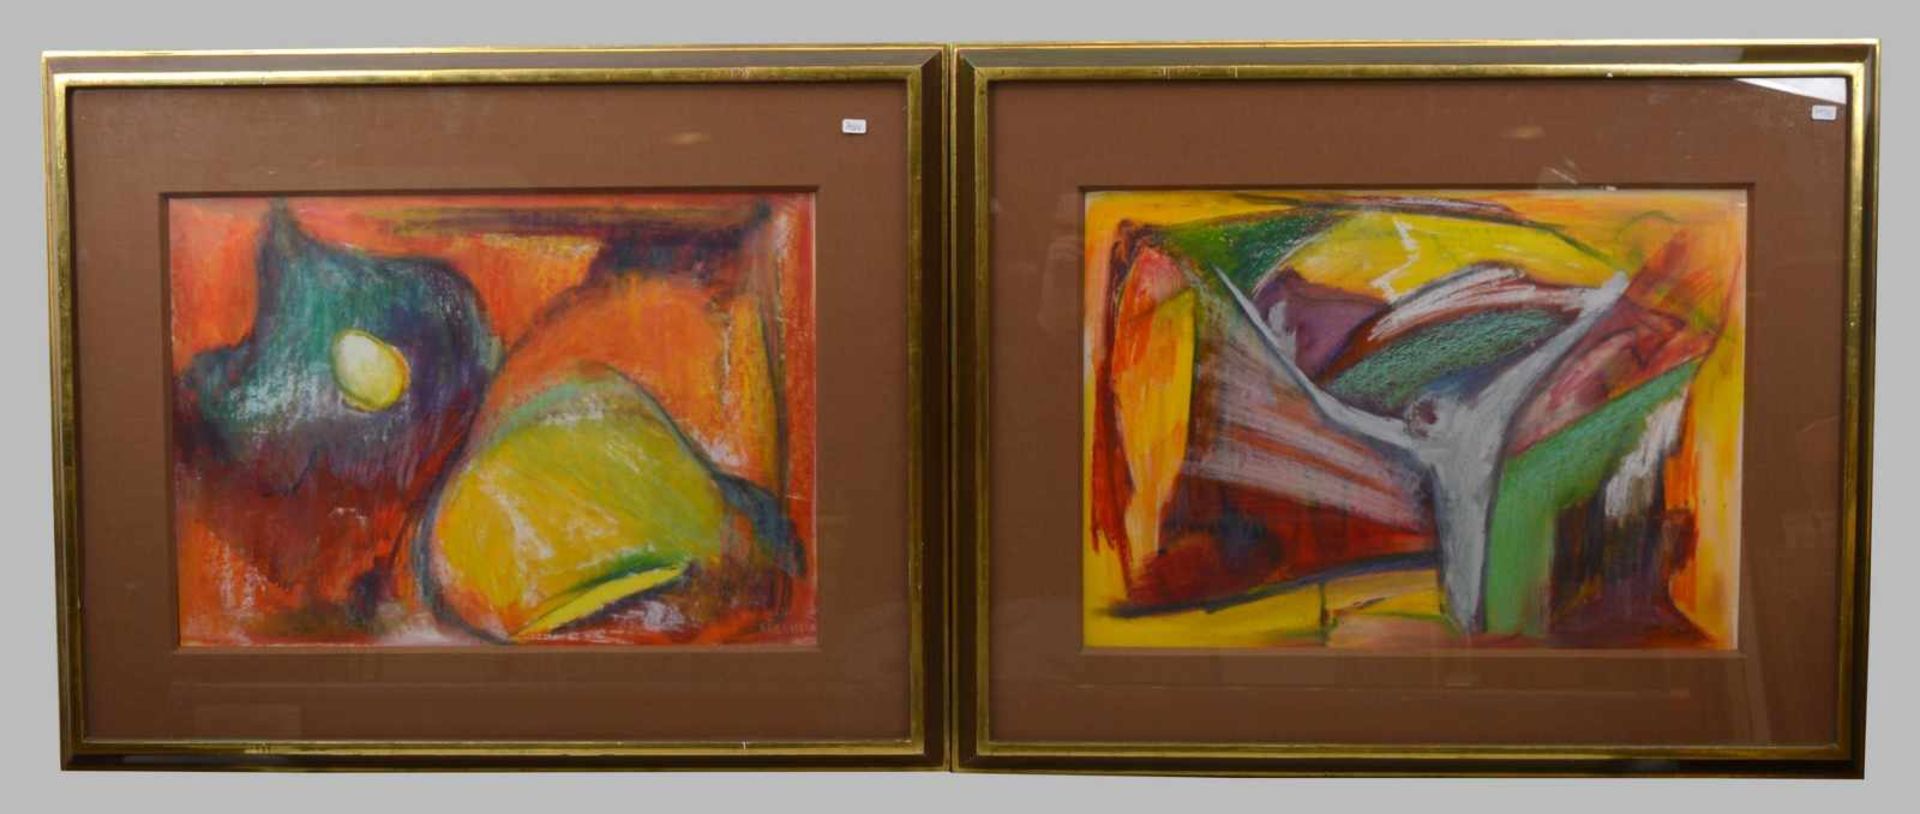 Zwei Gouachen ohne Titel, bunte Darstellungen, 35 X 51 cm, Rahmen